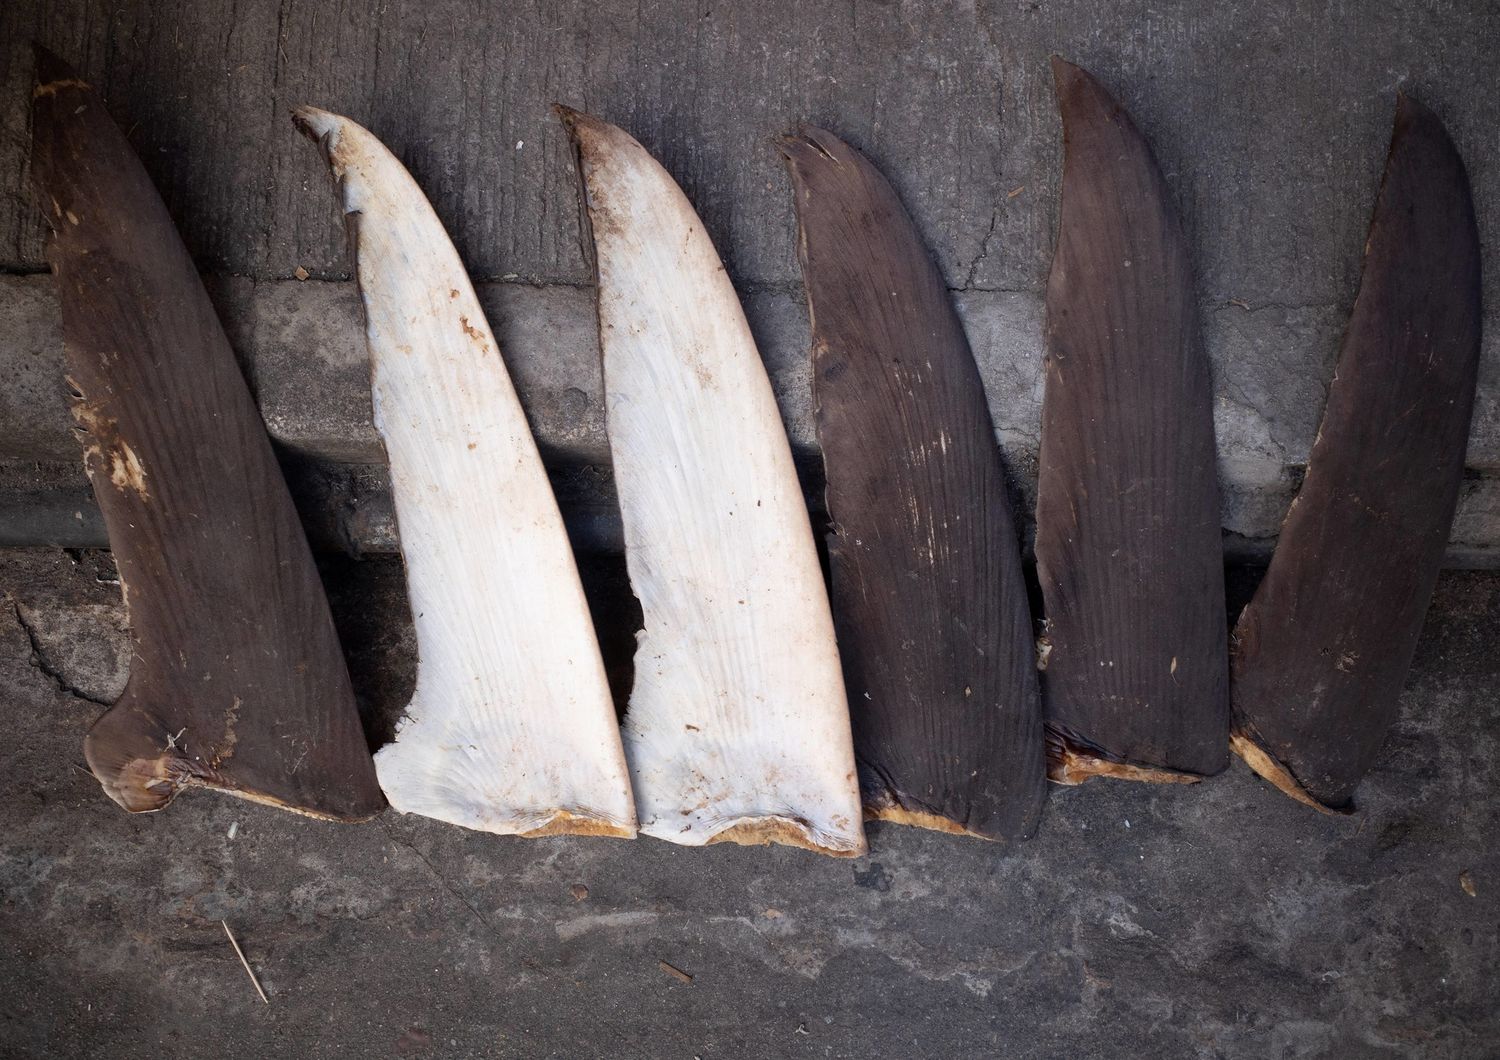 petizione per fermare commercio pinne squali finning